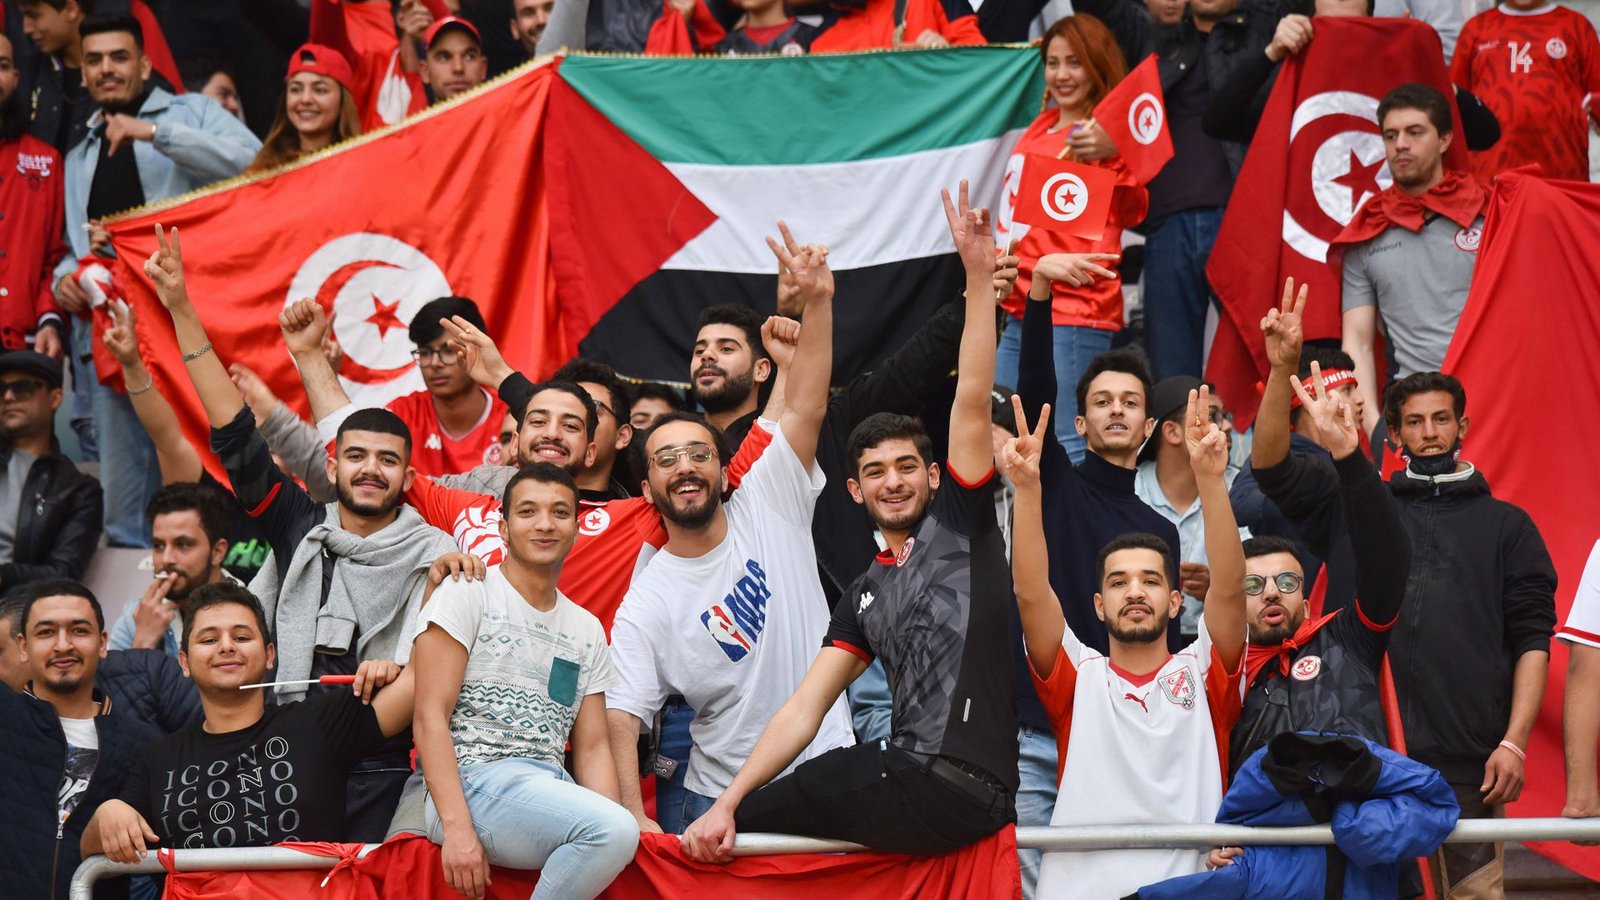 Bei der WM in Katar soll das Lied „Hayya Hayya“ für Stimmung bei den Fans sorgen.Foto: IMAGO/ZUMA Wire/IMAGO/jdidi wassim